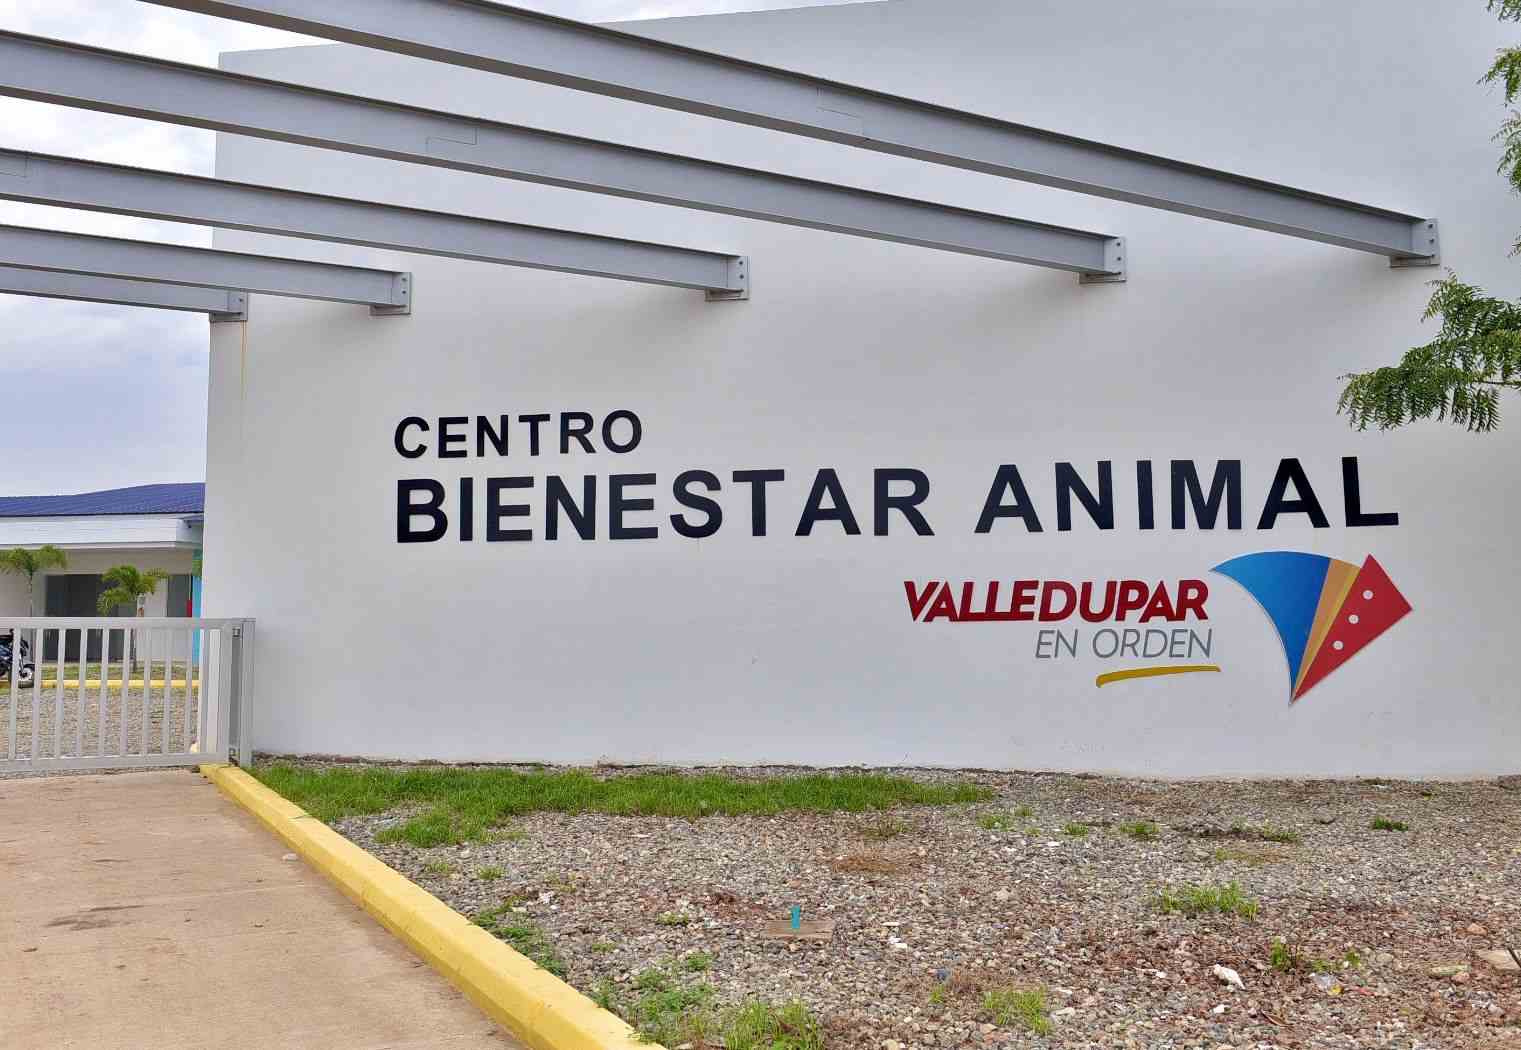 La empresa JP Soluciones brindará suministros administrativos en el Centro de Bienestar Animal. /Foto: REFERENCIA